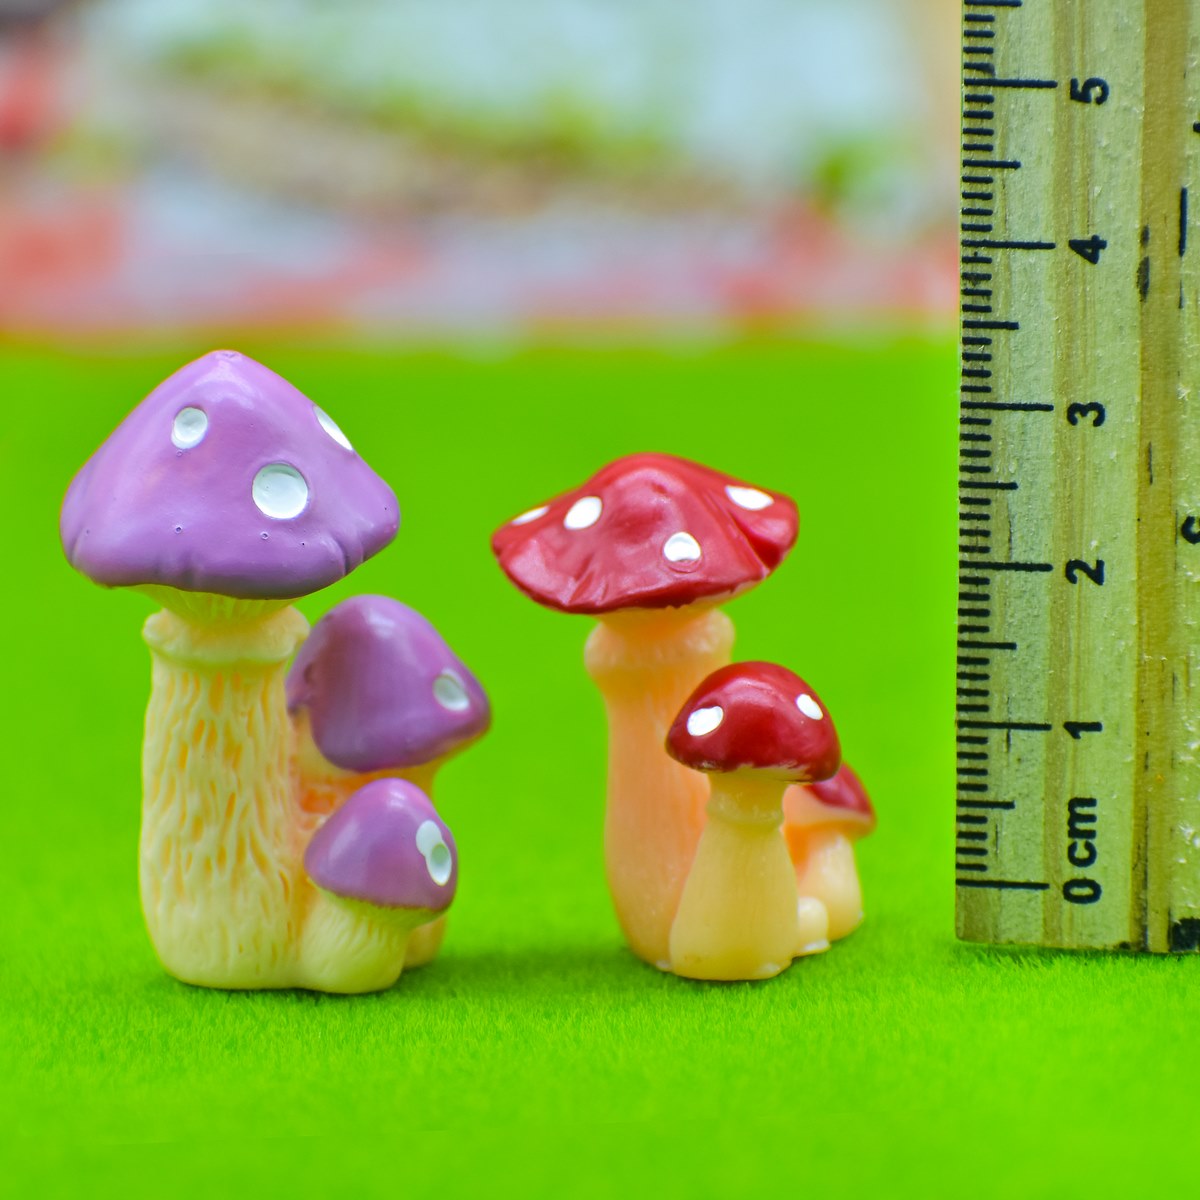 jags-mumbai Miniature Miniature Model Mushroom 3 Plant 2Pcs